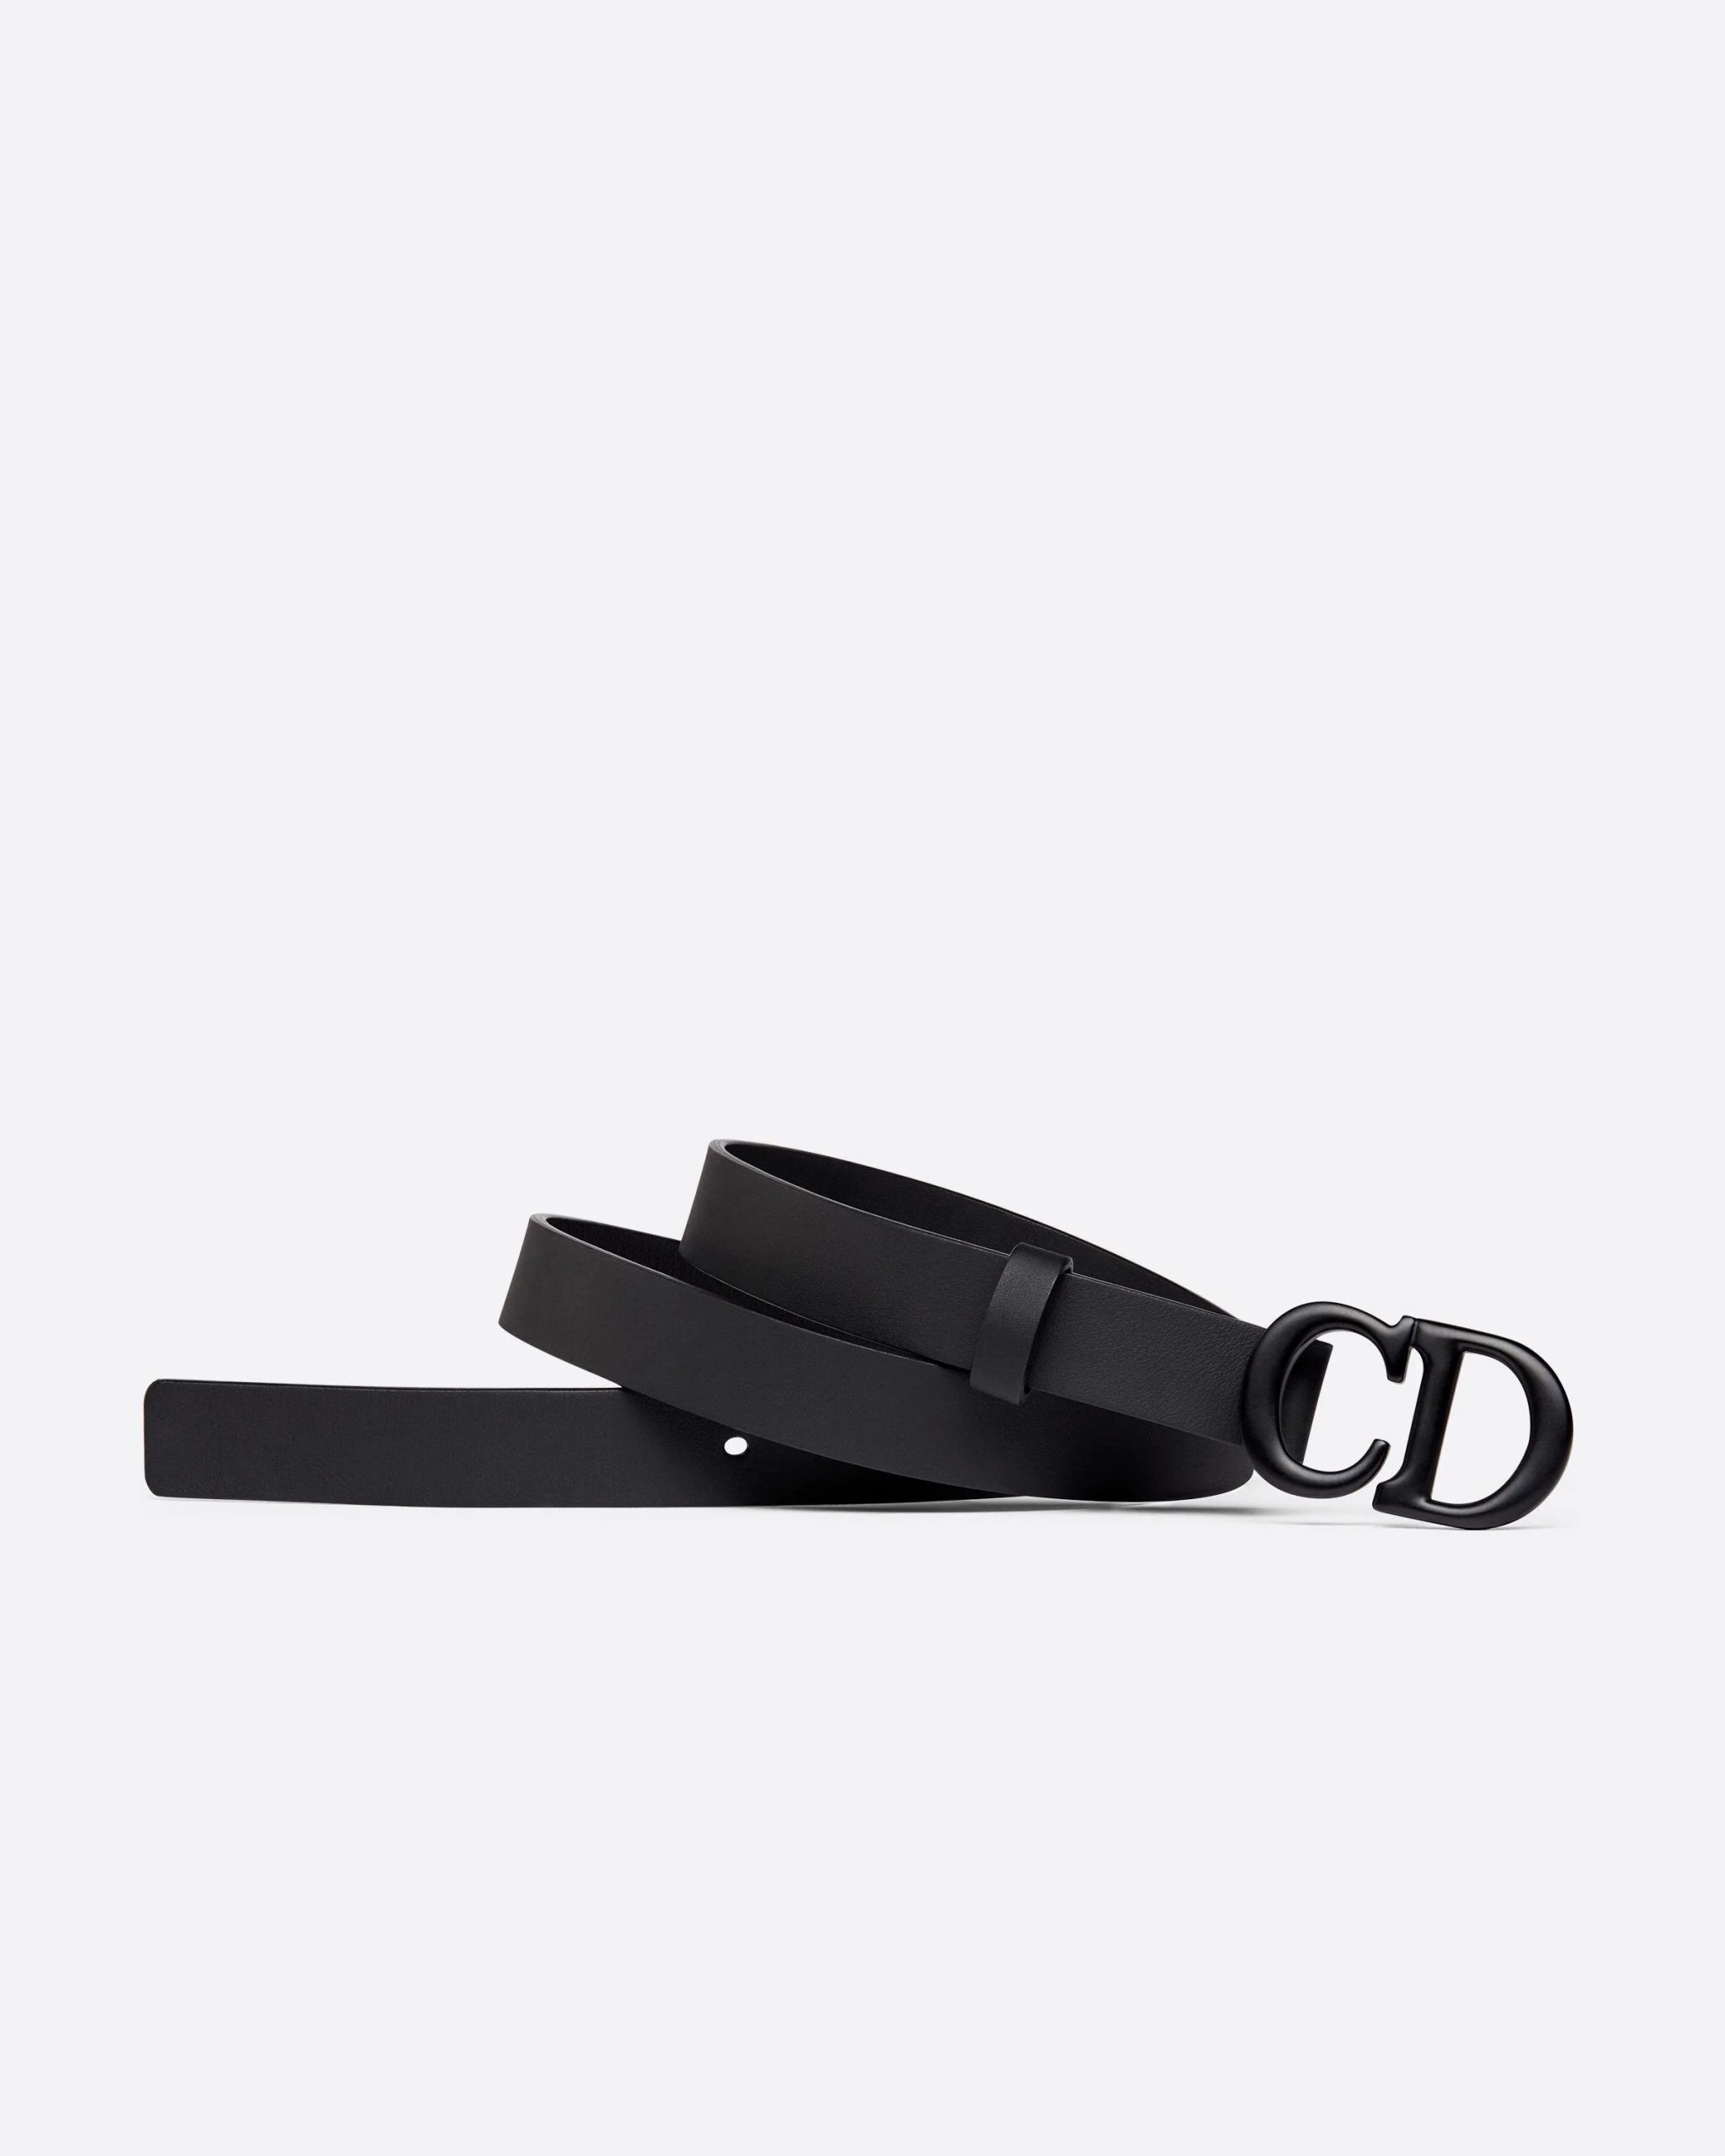 Dior Saddle Black Matte Calfskin, 20 mm